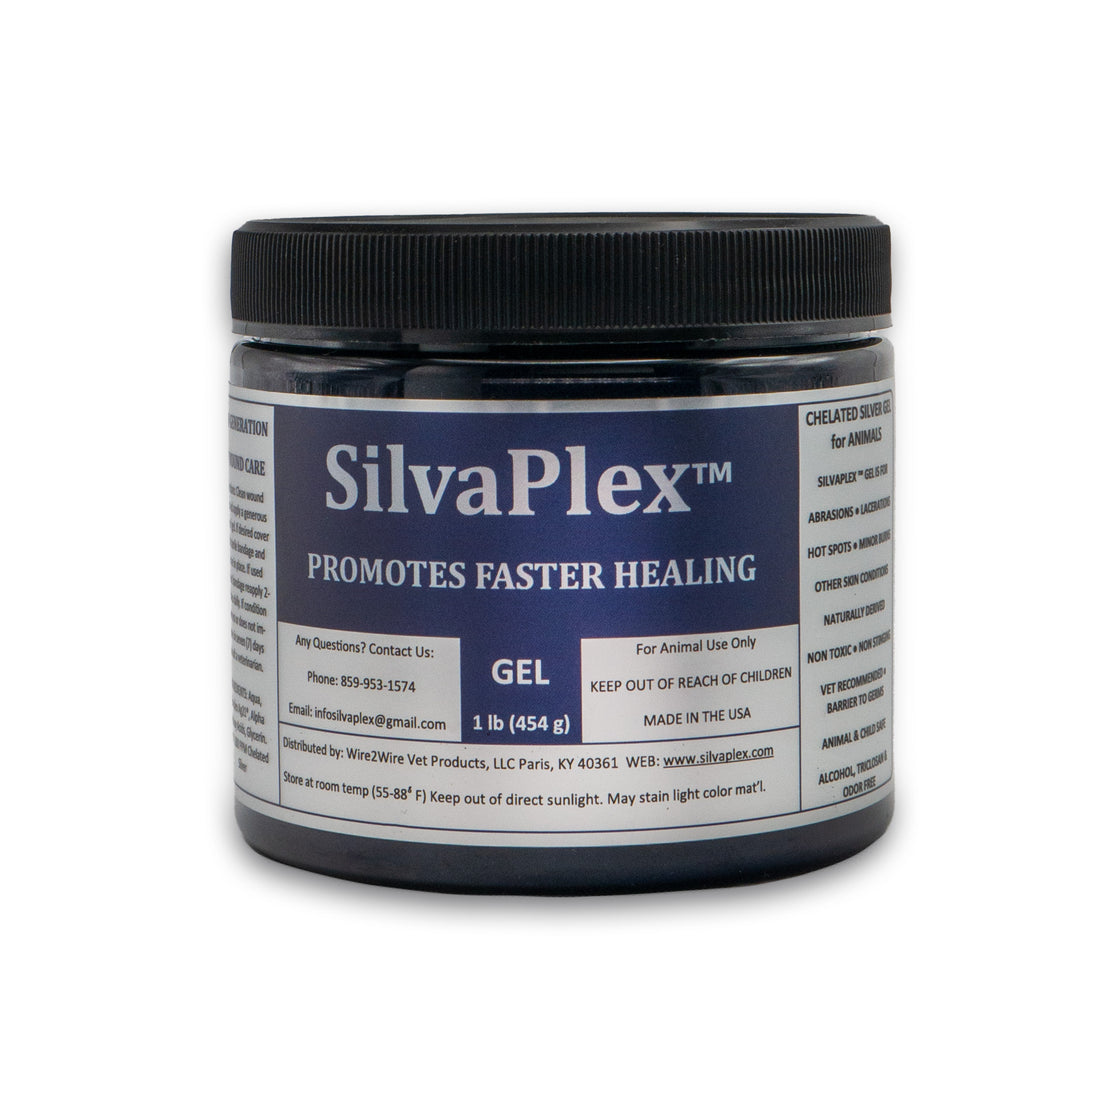 SilvaPlex® Original Wound Gel